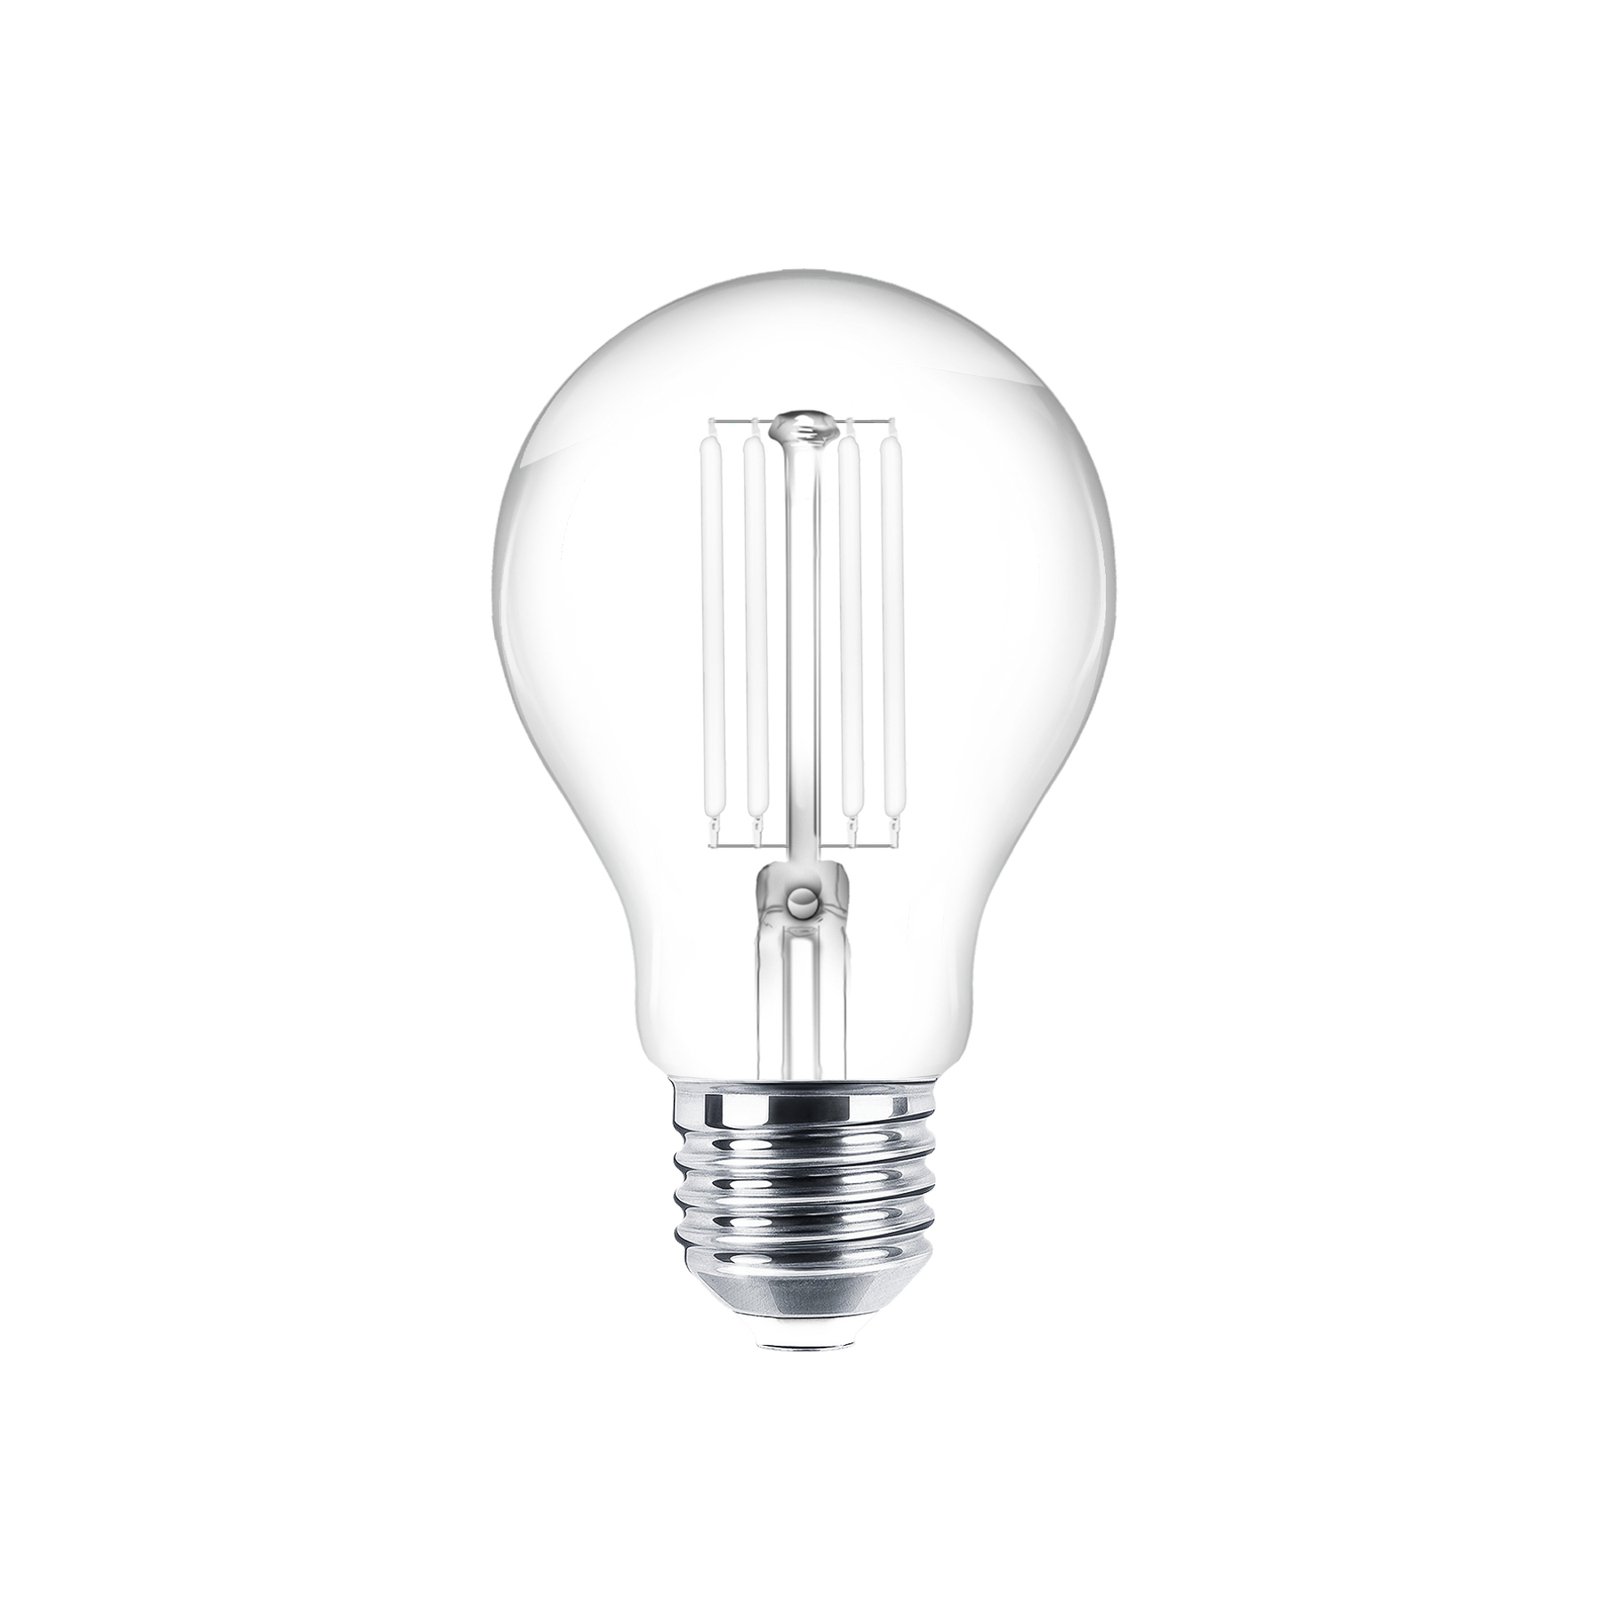 LED bulb filament E27 clear 7W 2700K 806lm set of 2